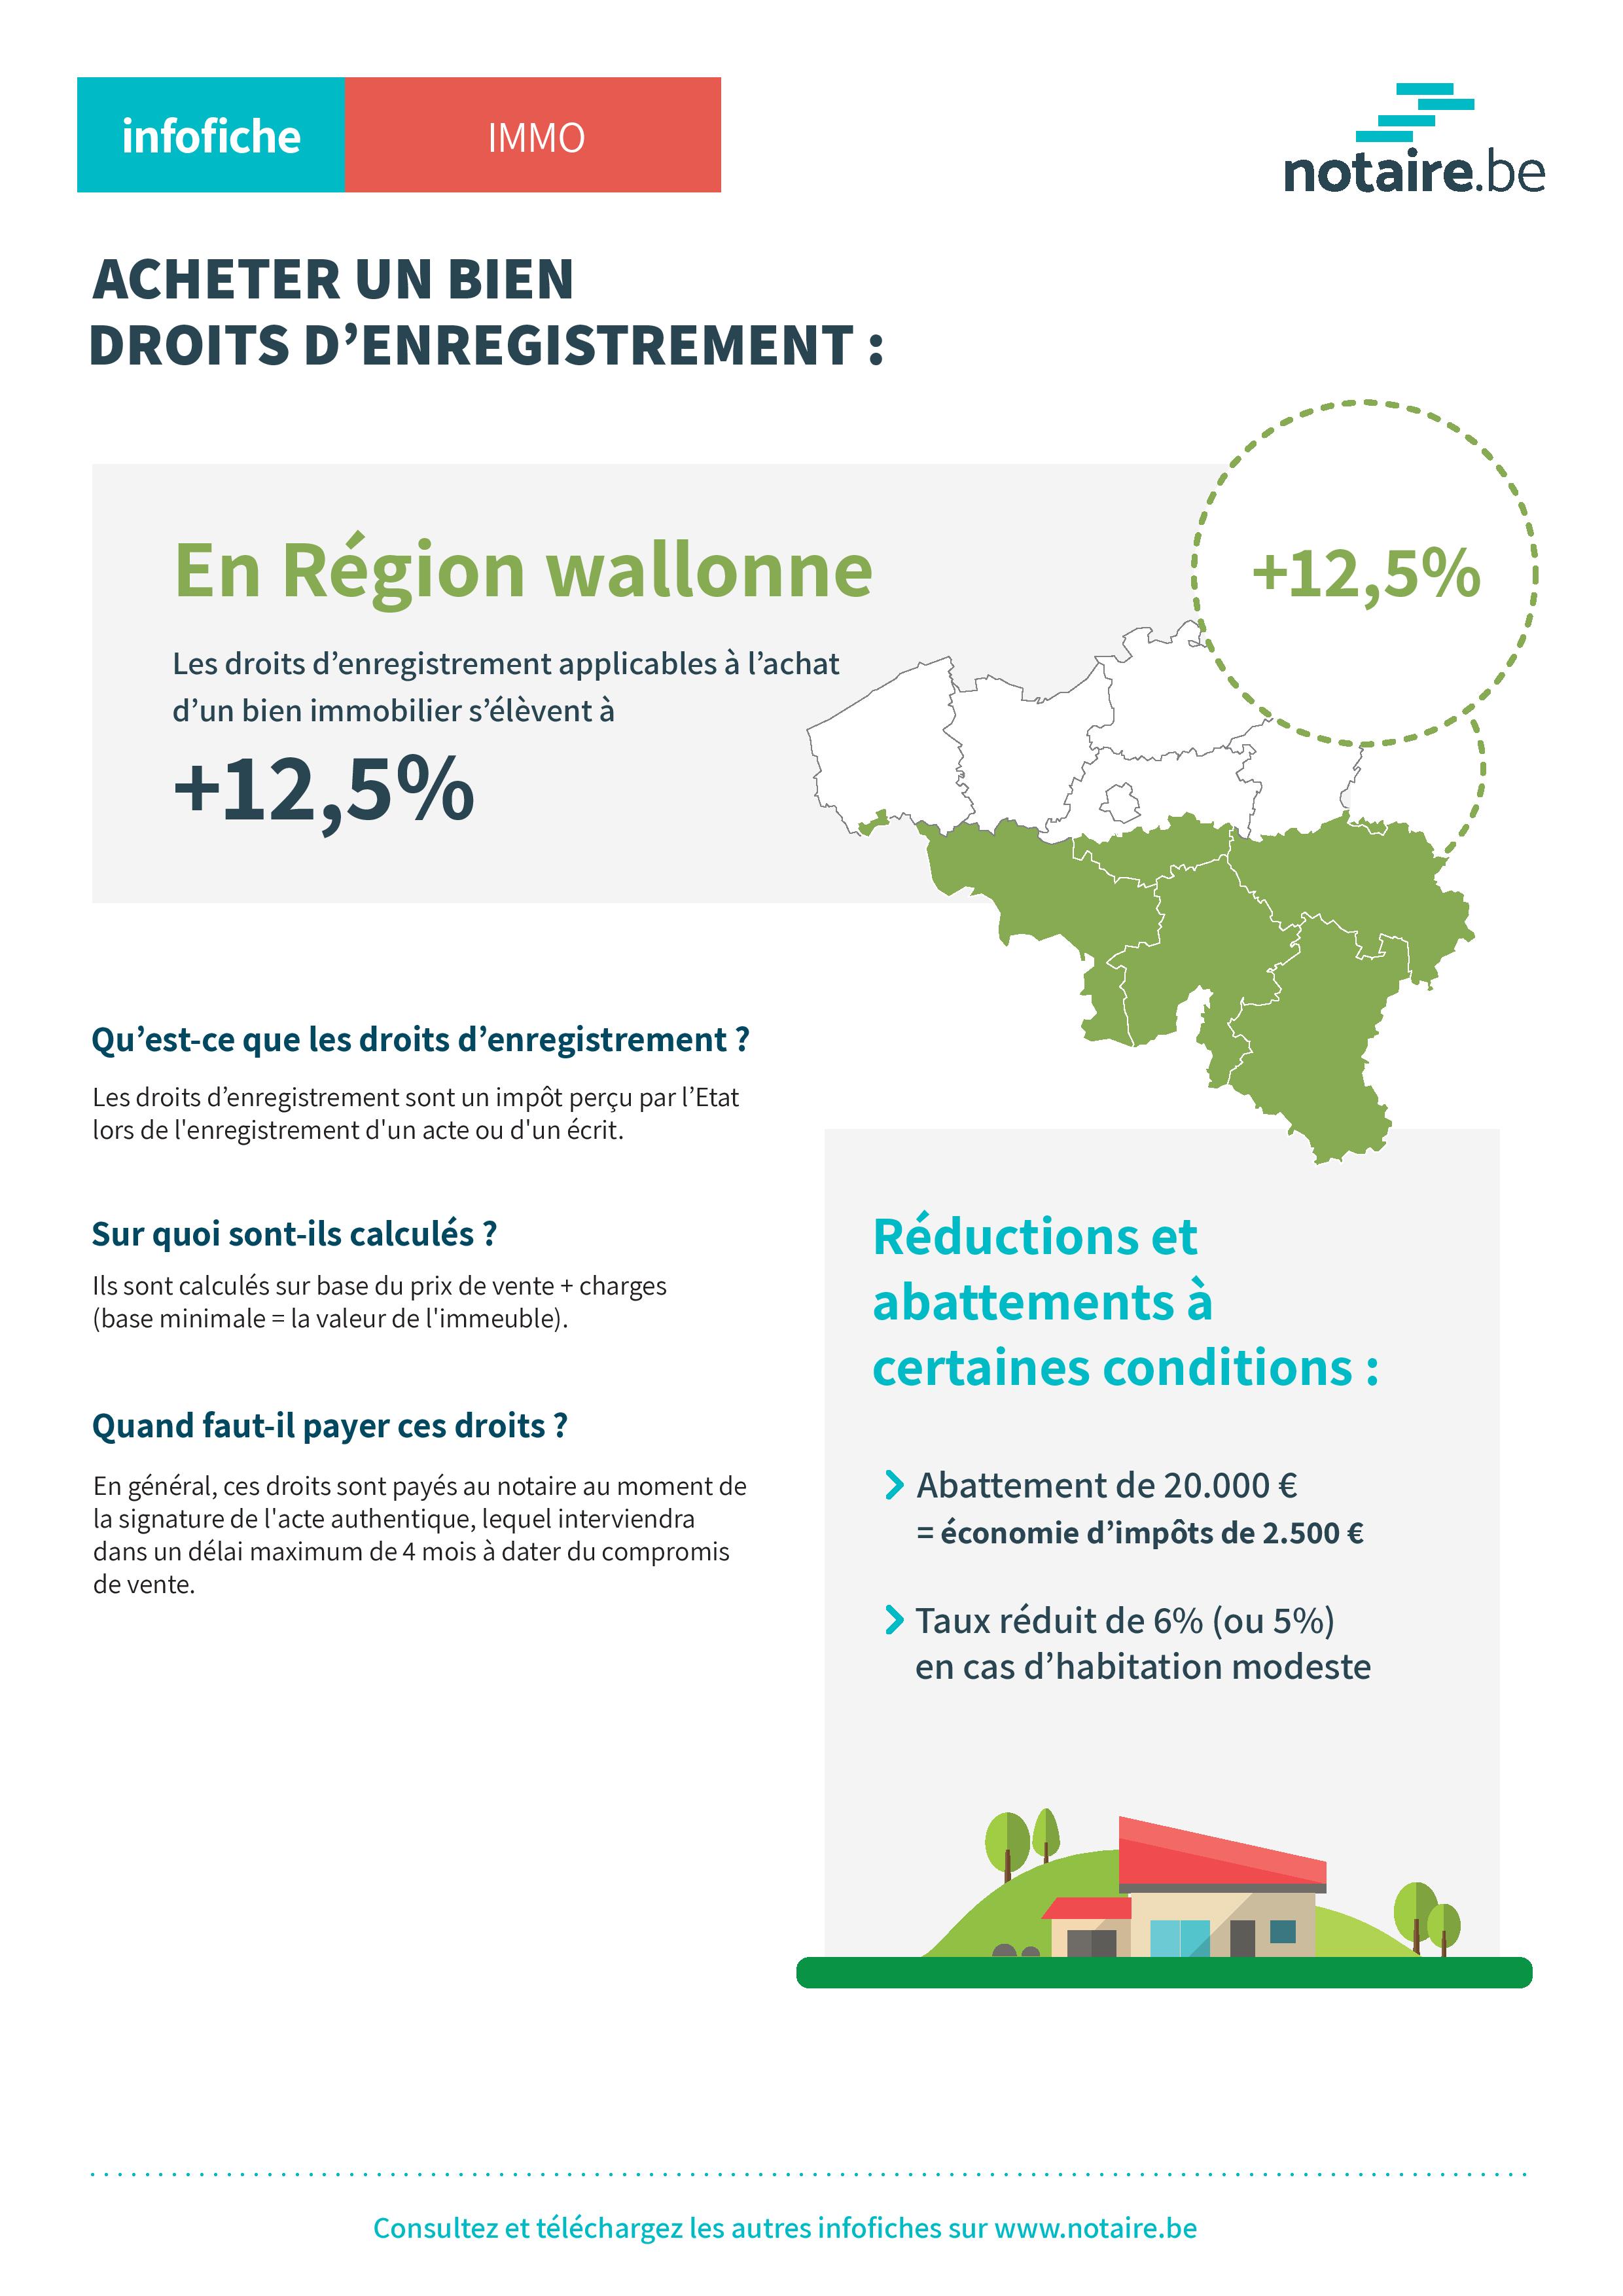 Infofiche droits d'enregistrement en Région wallonne